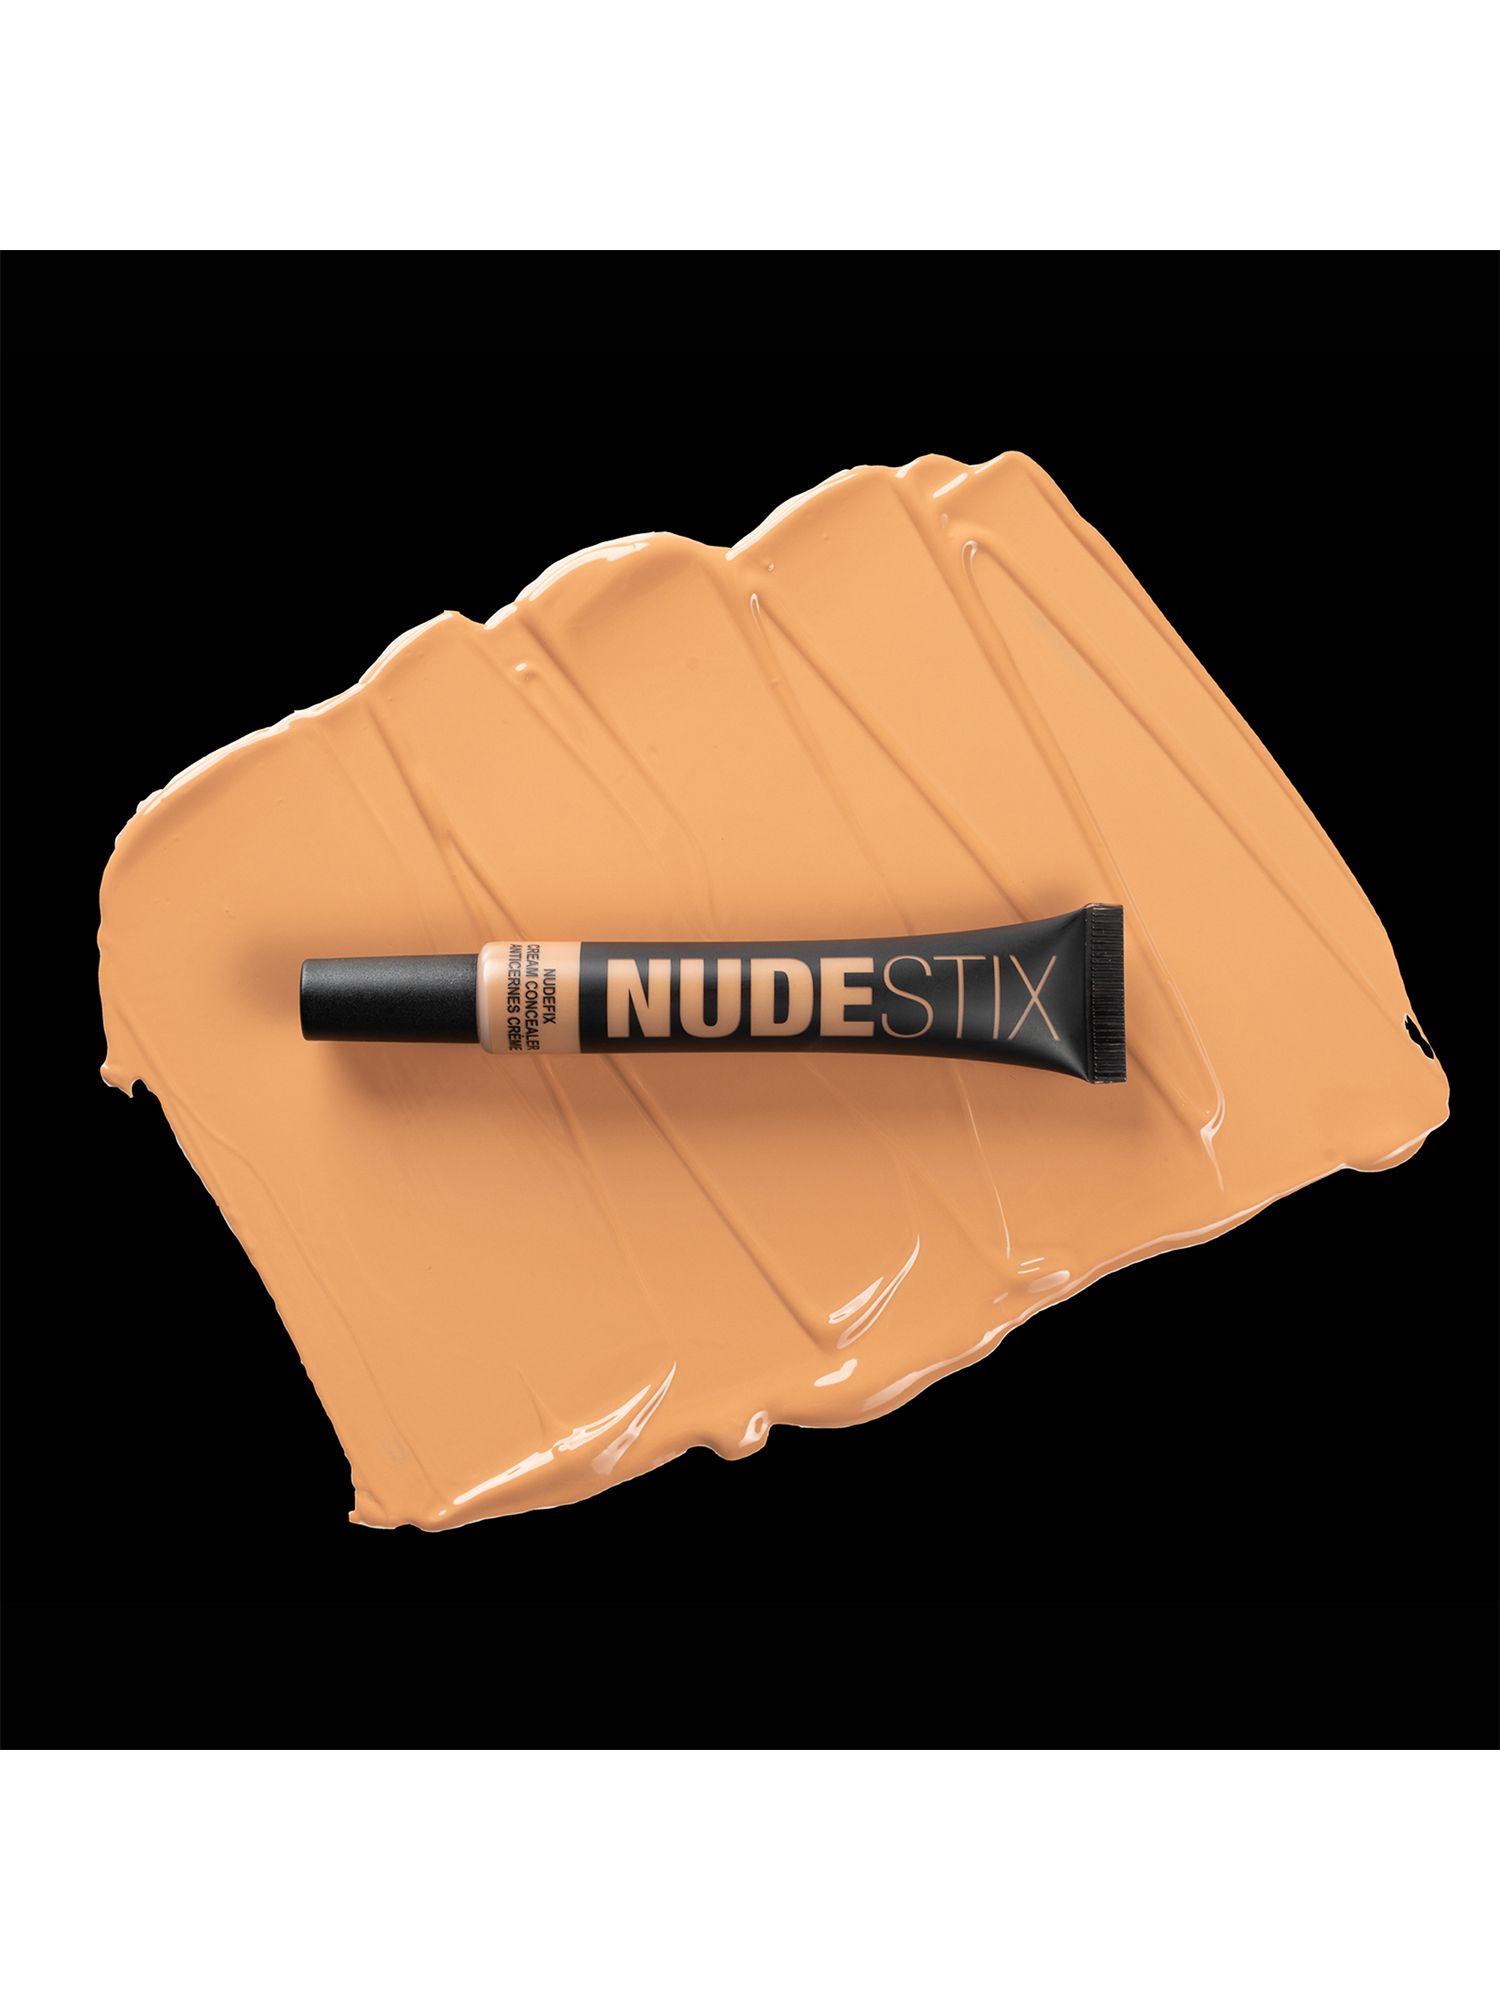 Nudestix Nudefix Cream Concealer, Nude 7 3